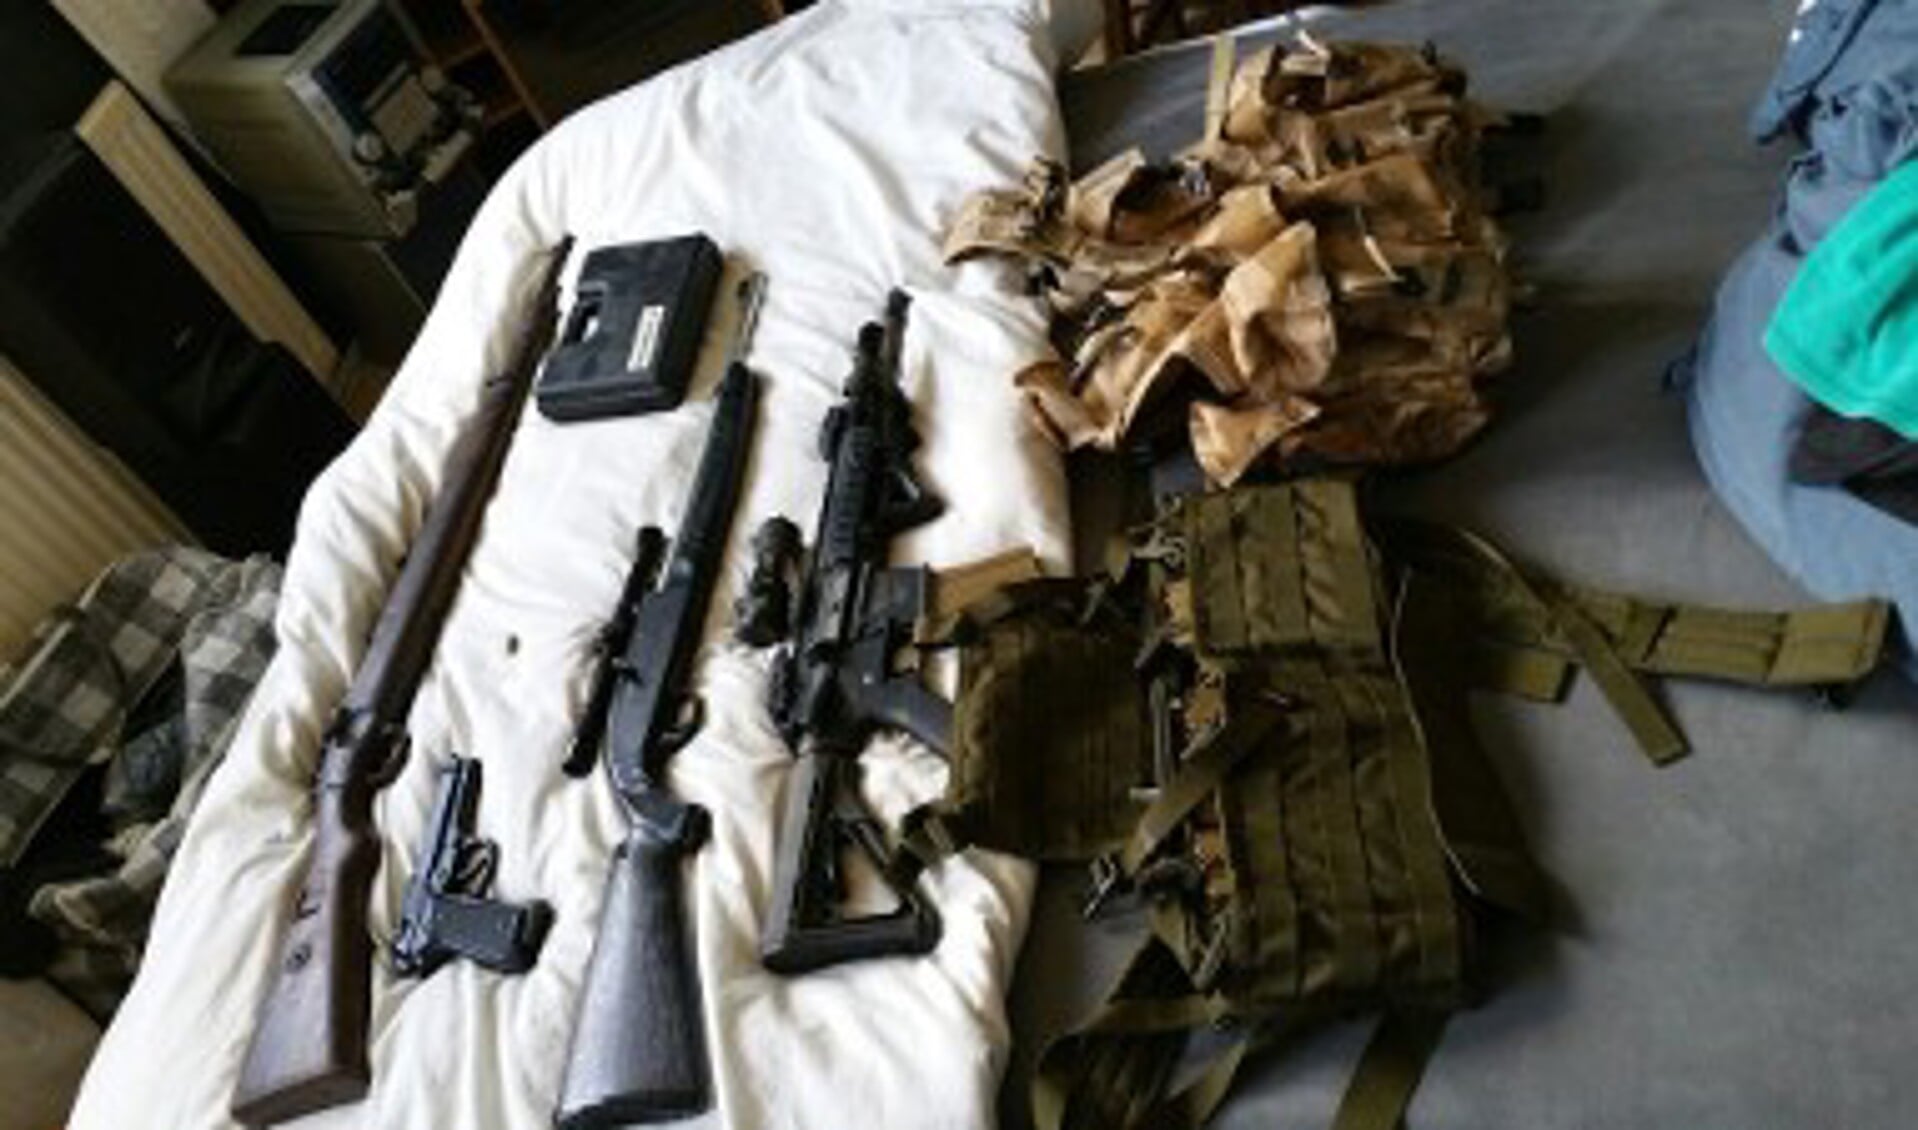 De gevonden wapens. Foto: Politie.